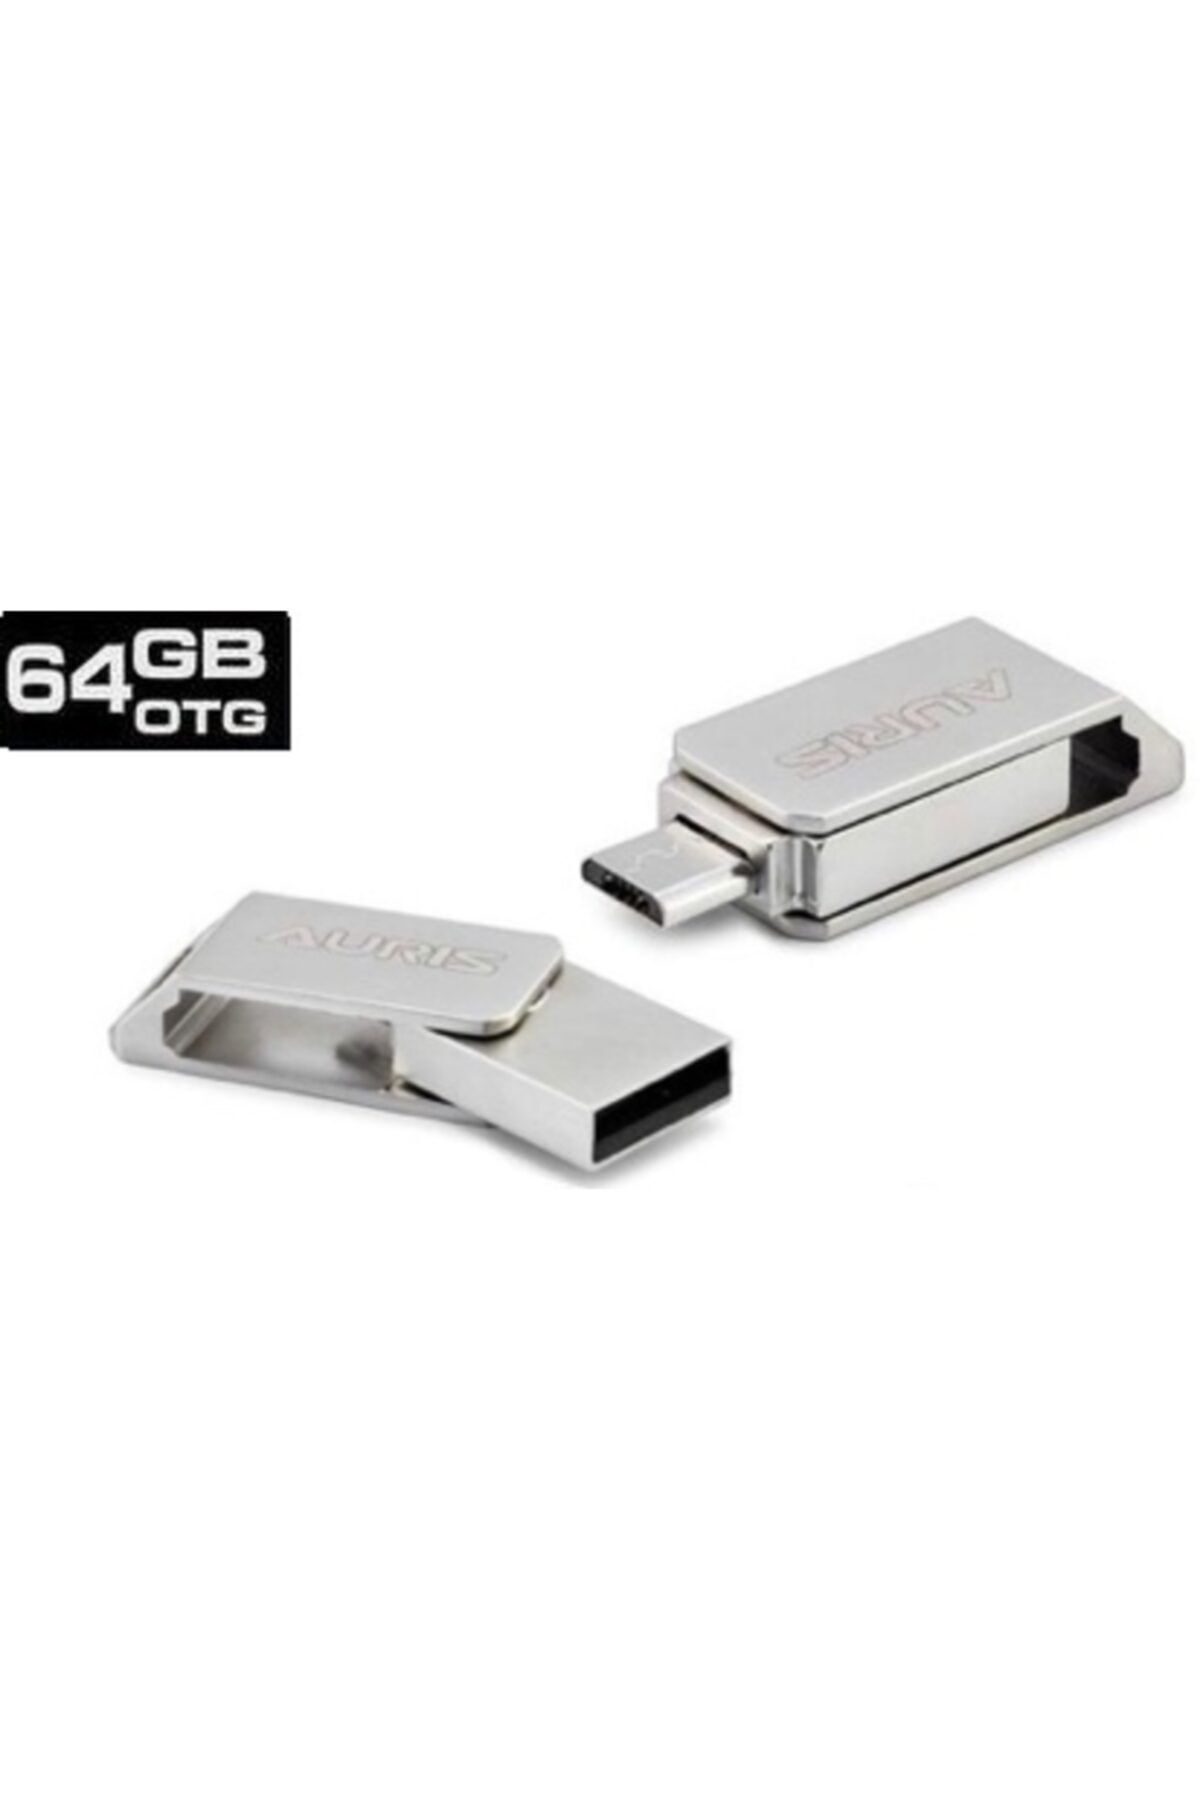 Teknoloji Gelsin 64gb Micro Usb Flash Bellek Mini 3.1 Usb Bellek Metal Dual Otg 64 Gb